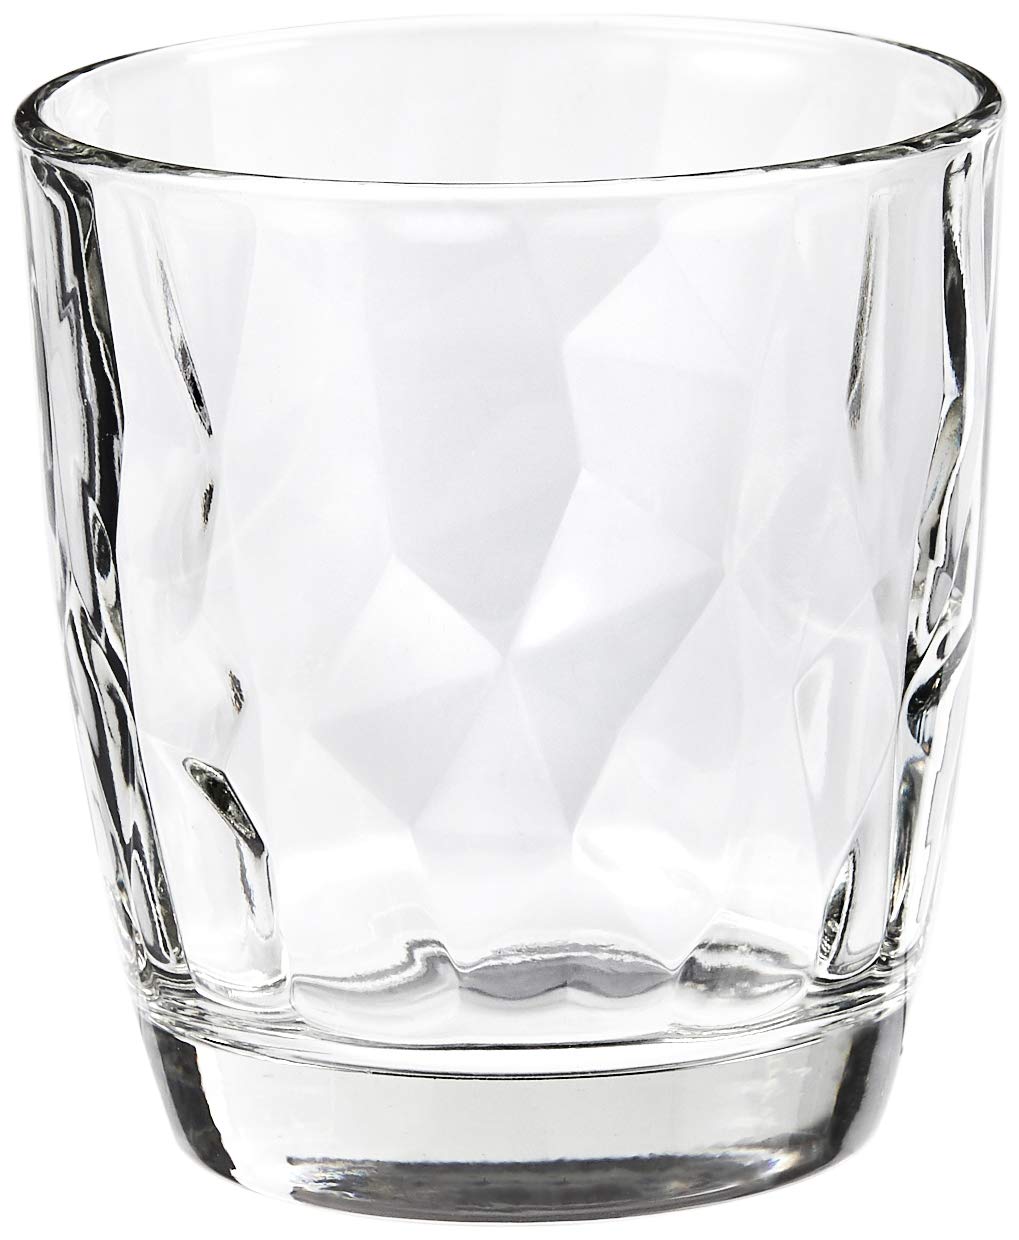 Magnifique Ensemble de verres Bormioli Rocco Diamond 6 pièces (Couleur claire, Verres de 305 ml, Lavables au lave-vaisselle, Verres à eau, pour cocktails / eau) 92TSAmXyy en vente